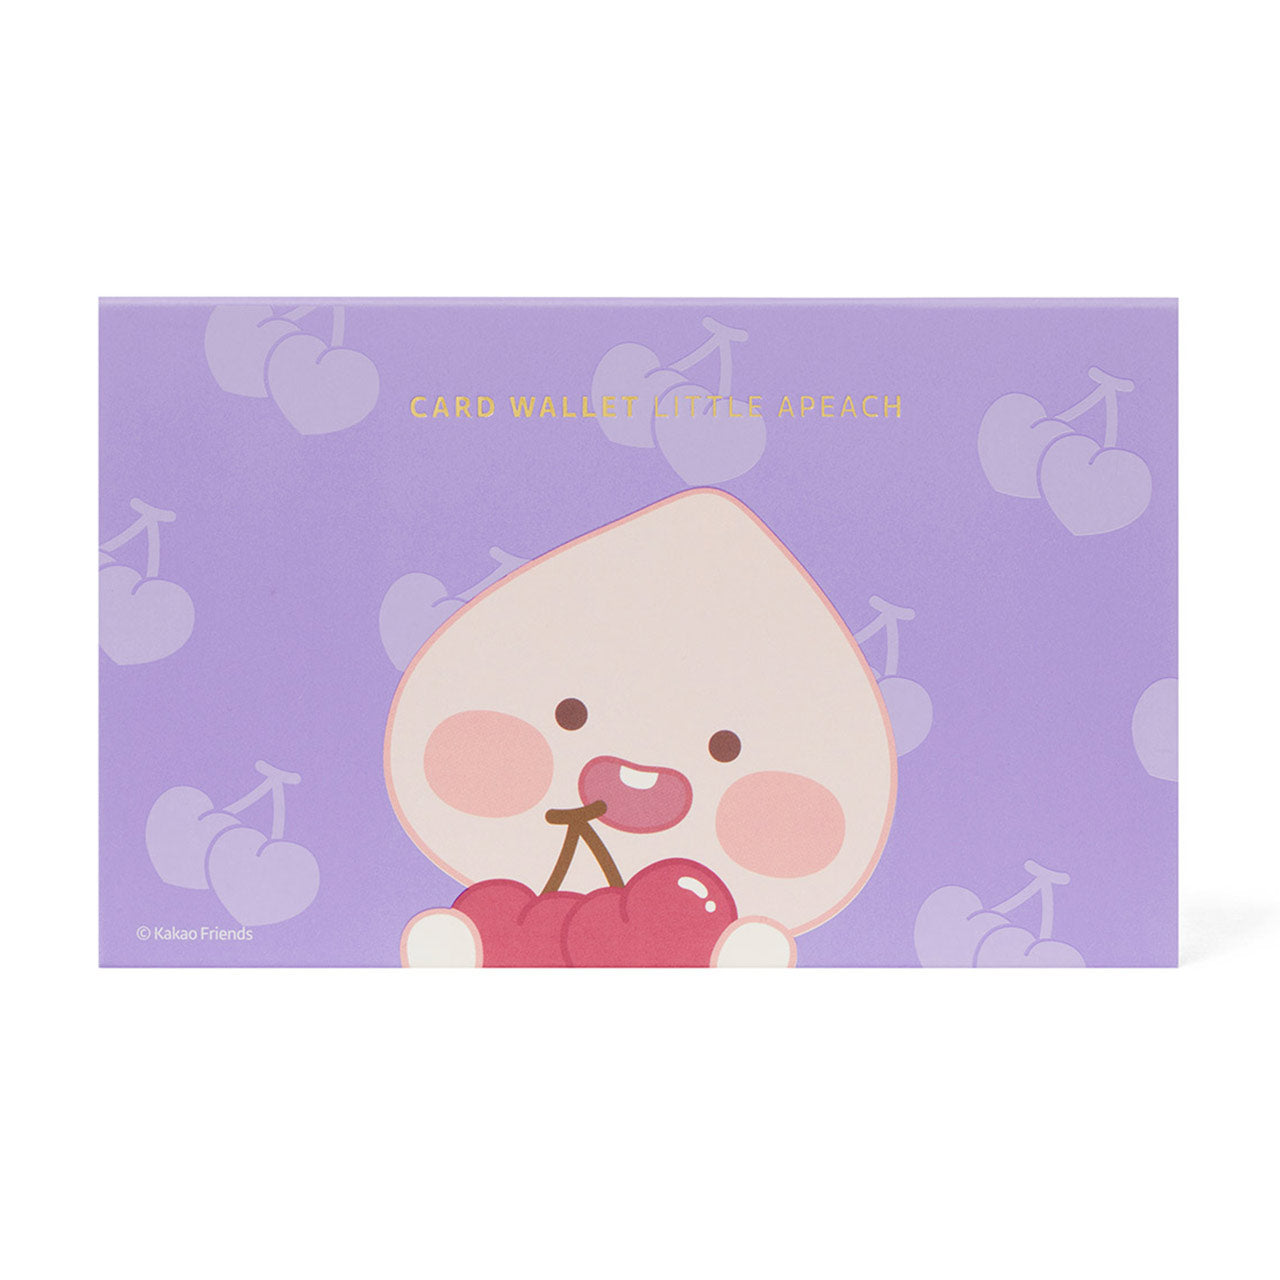 Card Wallet-Cherry Apeach